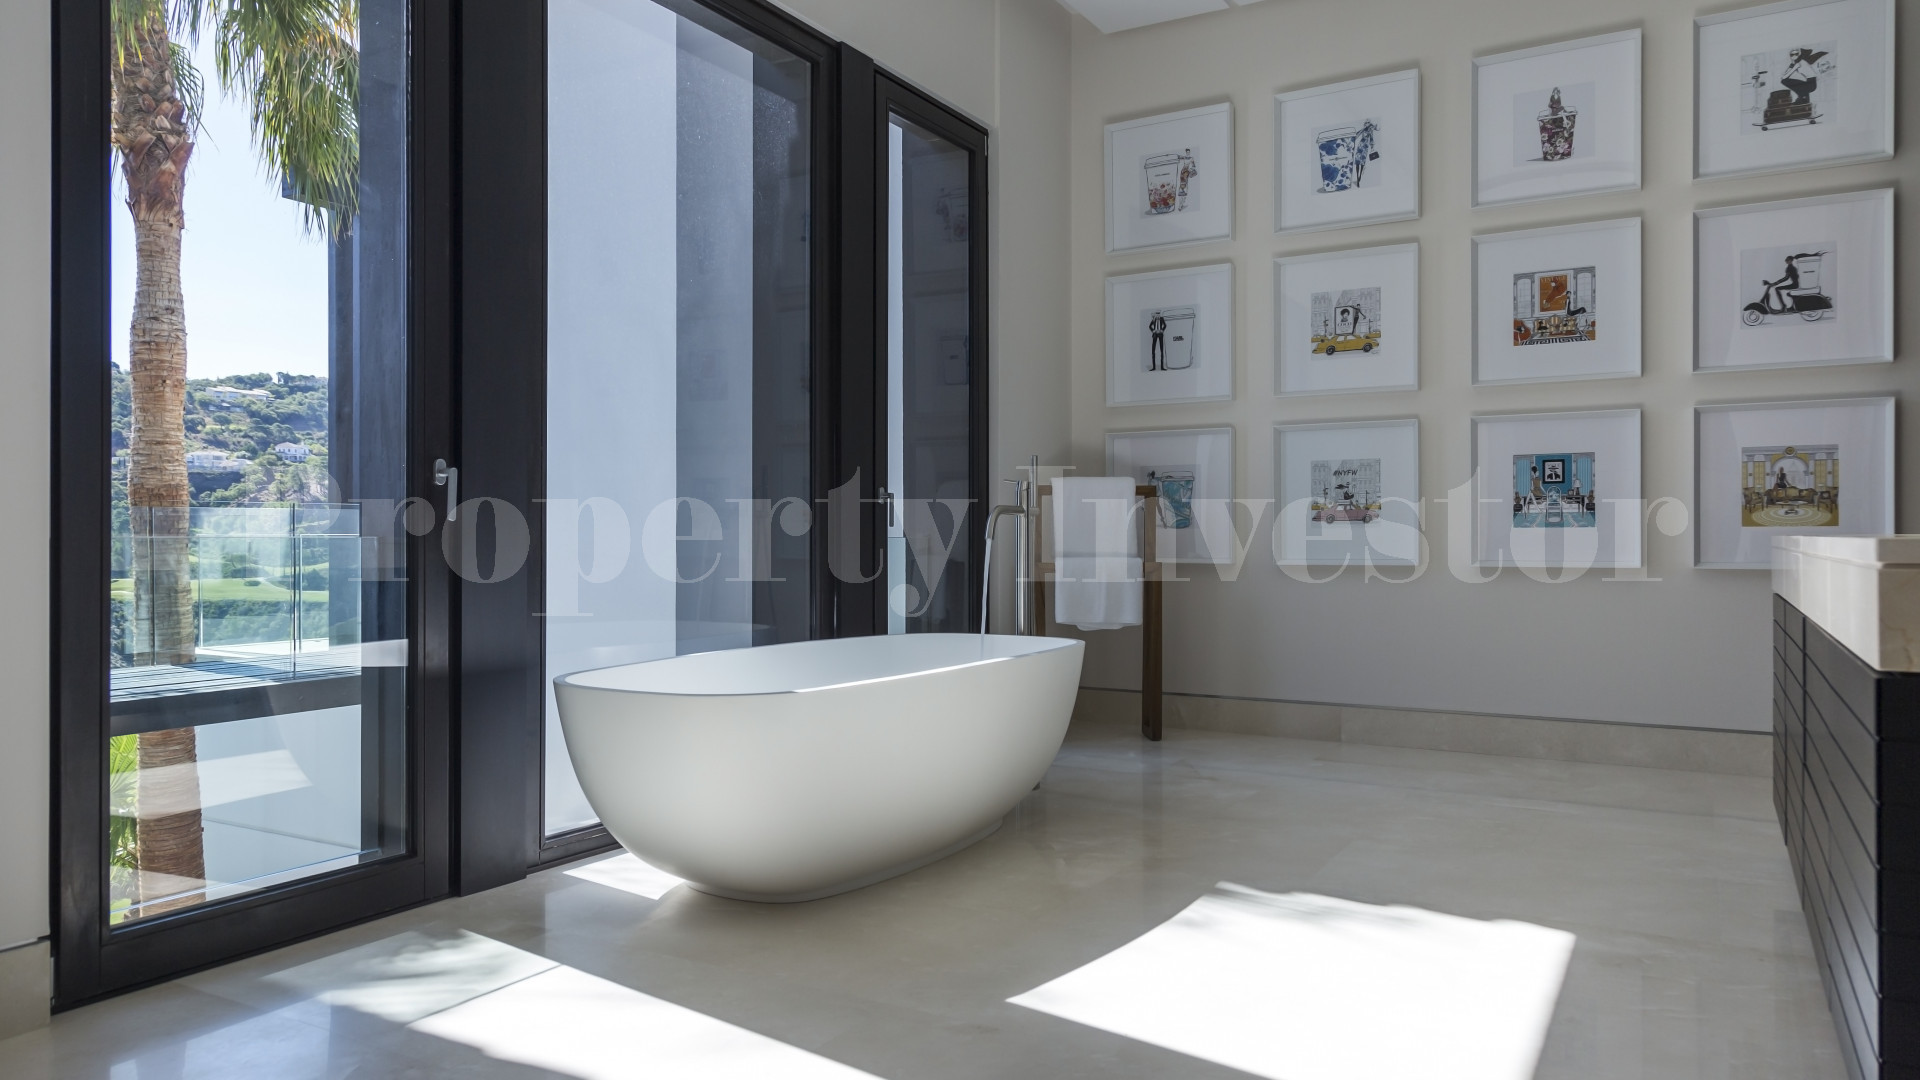 Breathtaking 6 Bedroom Luxury Hillside Villa for Sale in La Zagaleta, Spain